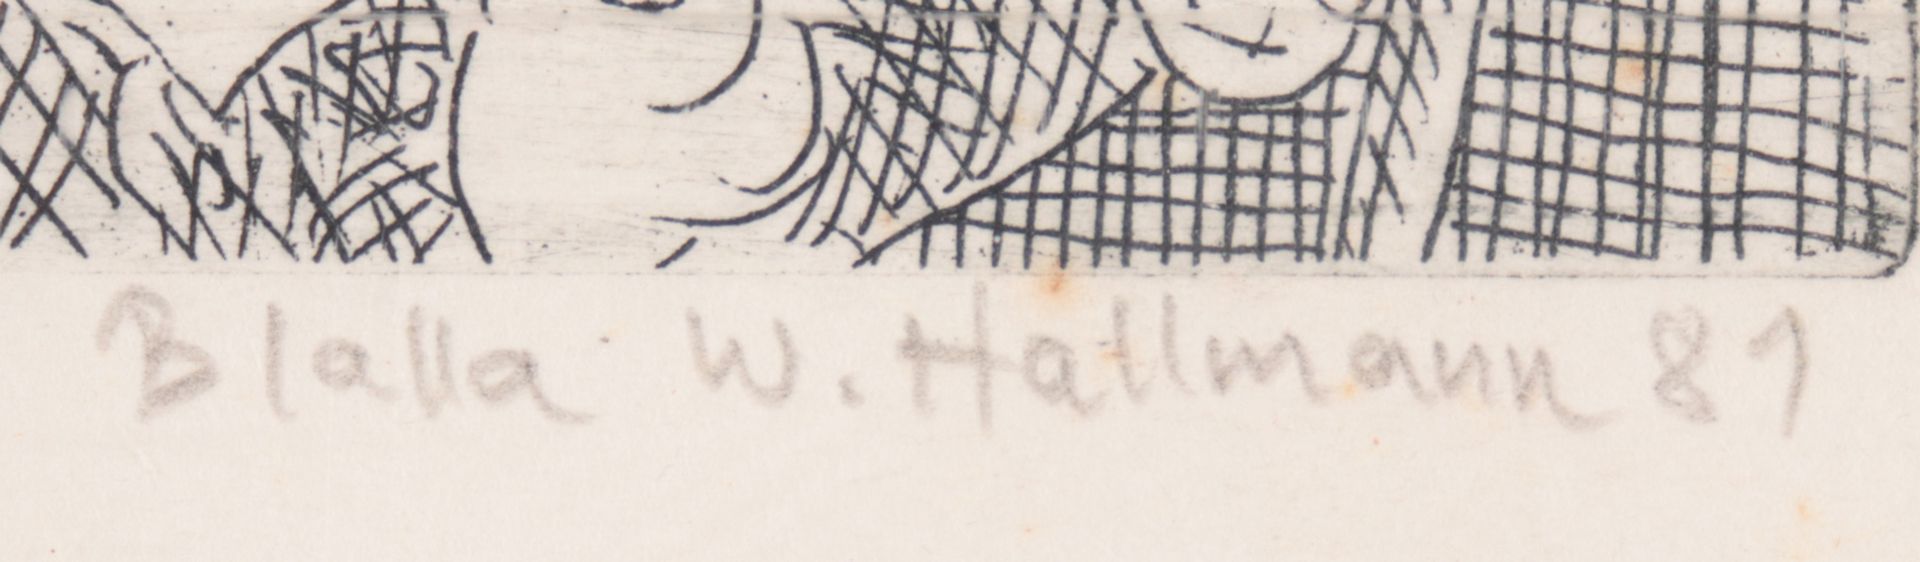 Hallmann, Blalla W. - Bild 3 aus 5